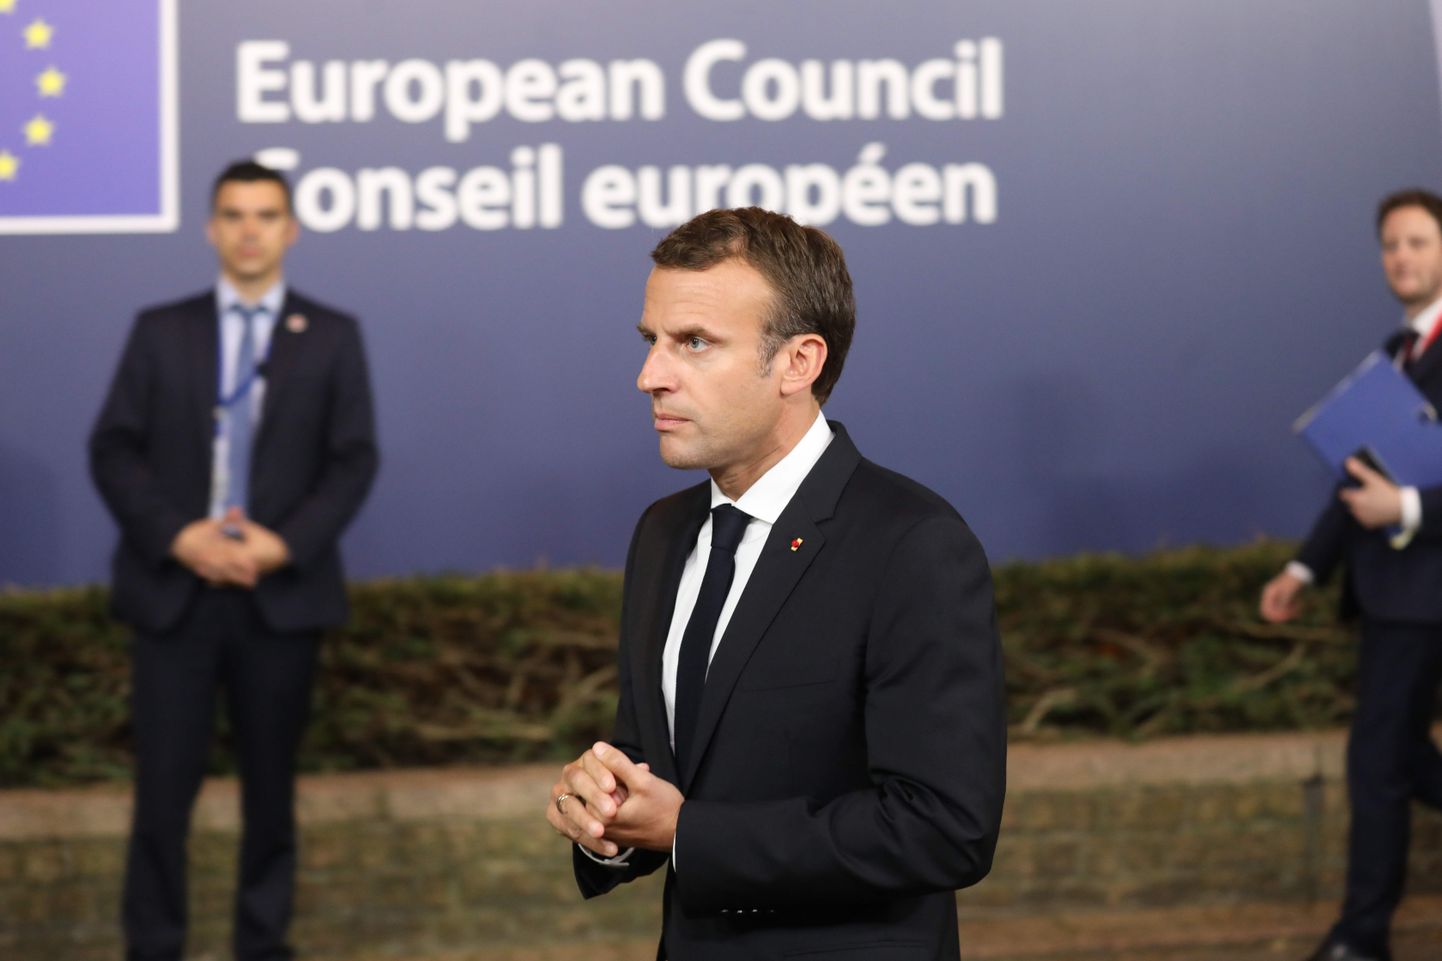 Täna arutatakse Euroopa Ülemkogul Prantsusmaa presidendi Emmanuel Macroni euroala reformikava.